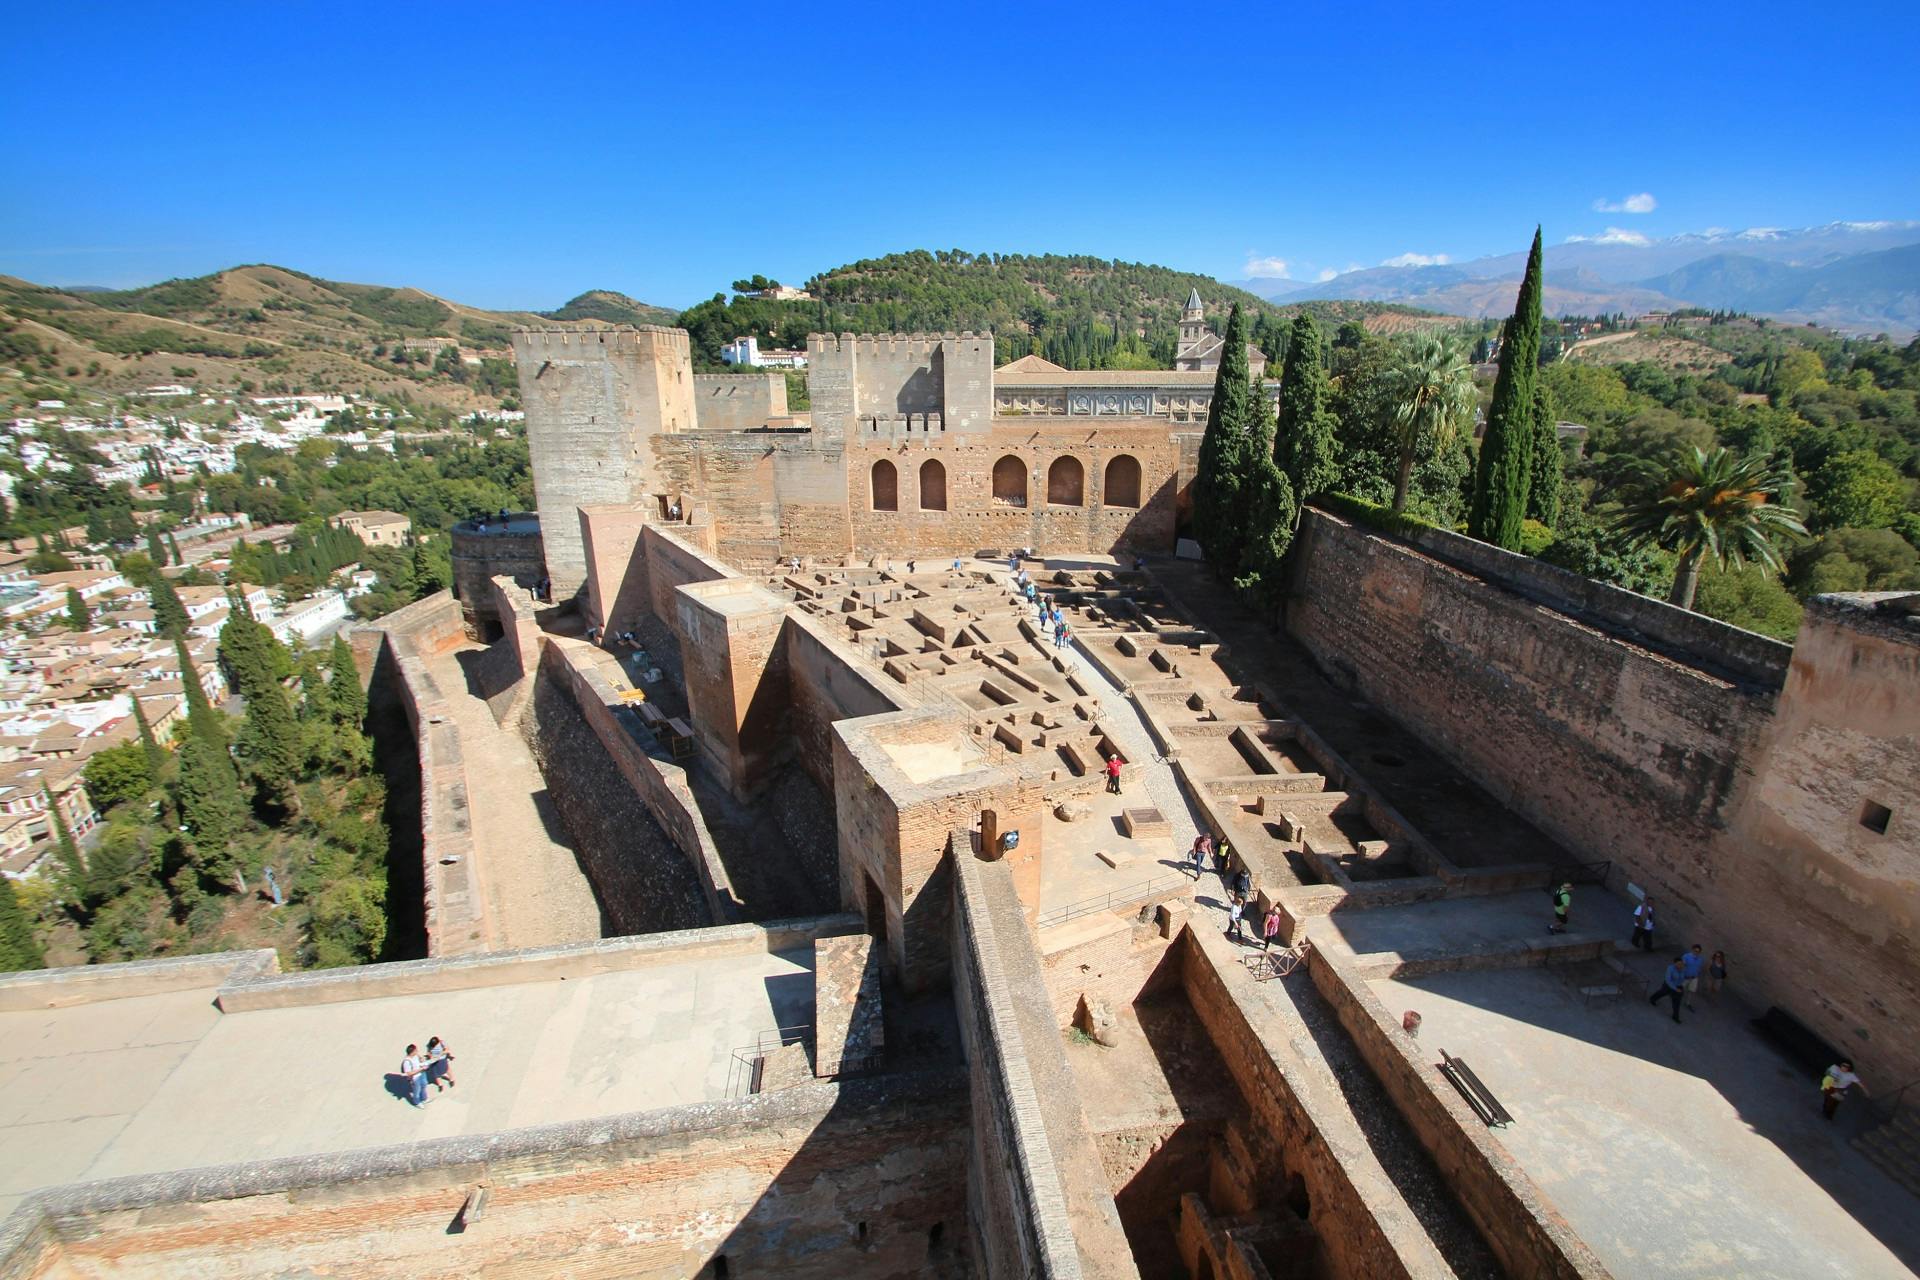 Bilety z ominięciem kolejki i audioprzewodnik po Alhambrze, pałacu Karola V, Generalife i Alcazabie